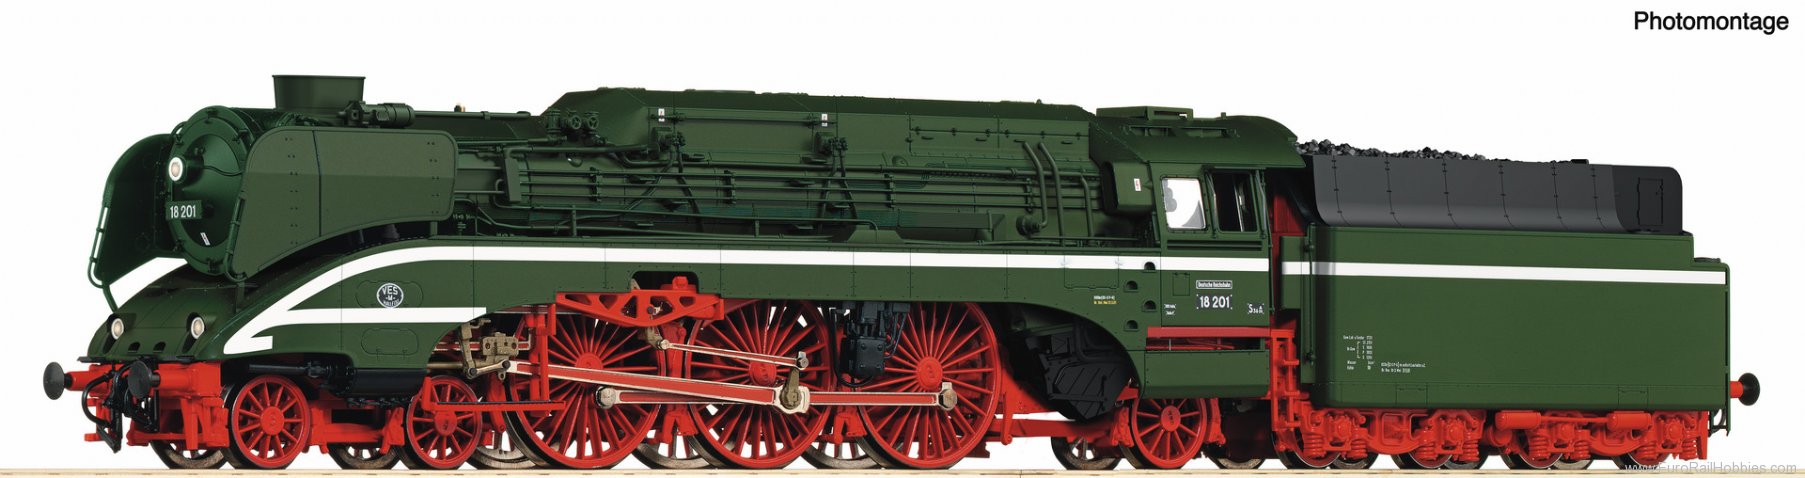 Roco 7120006 High-speed steam locomotive 18 201, coil-fire